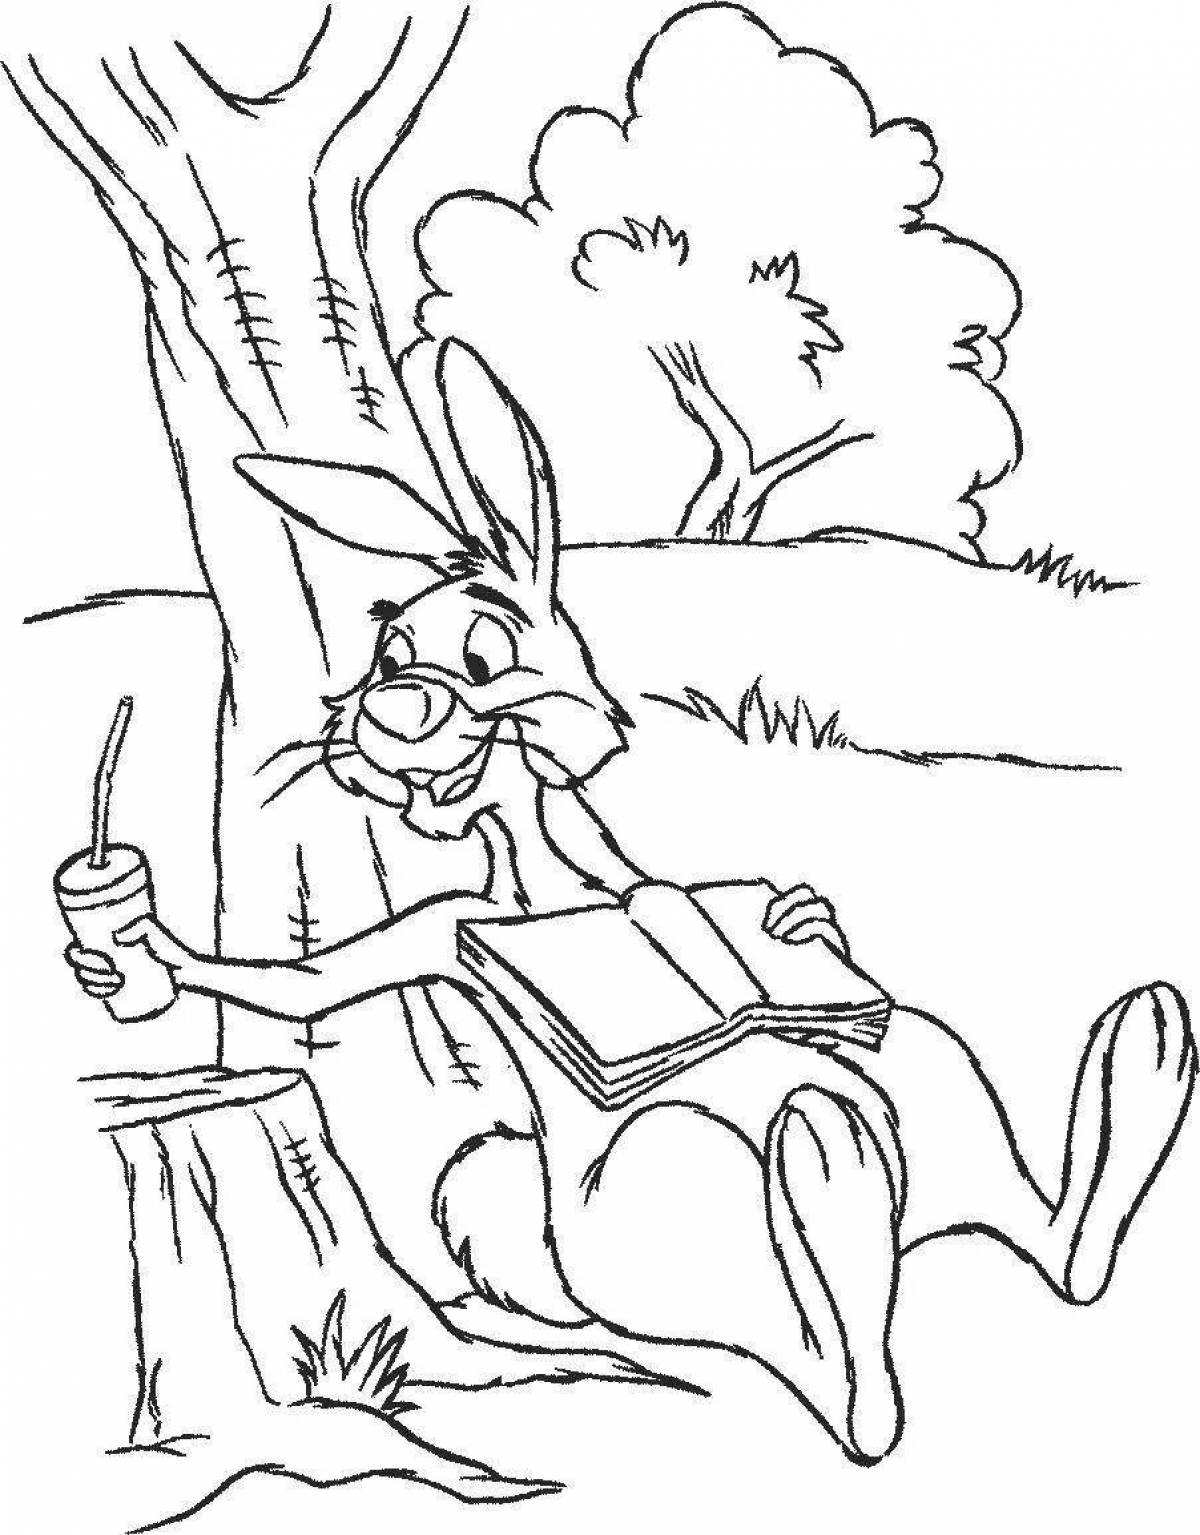 Сказки: Сказка про храброго зайца - длинные уши, косые глаза, короткий хвост. Сказка про Козявочку